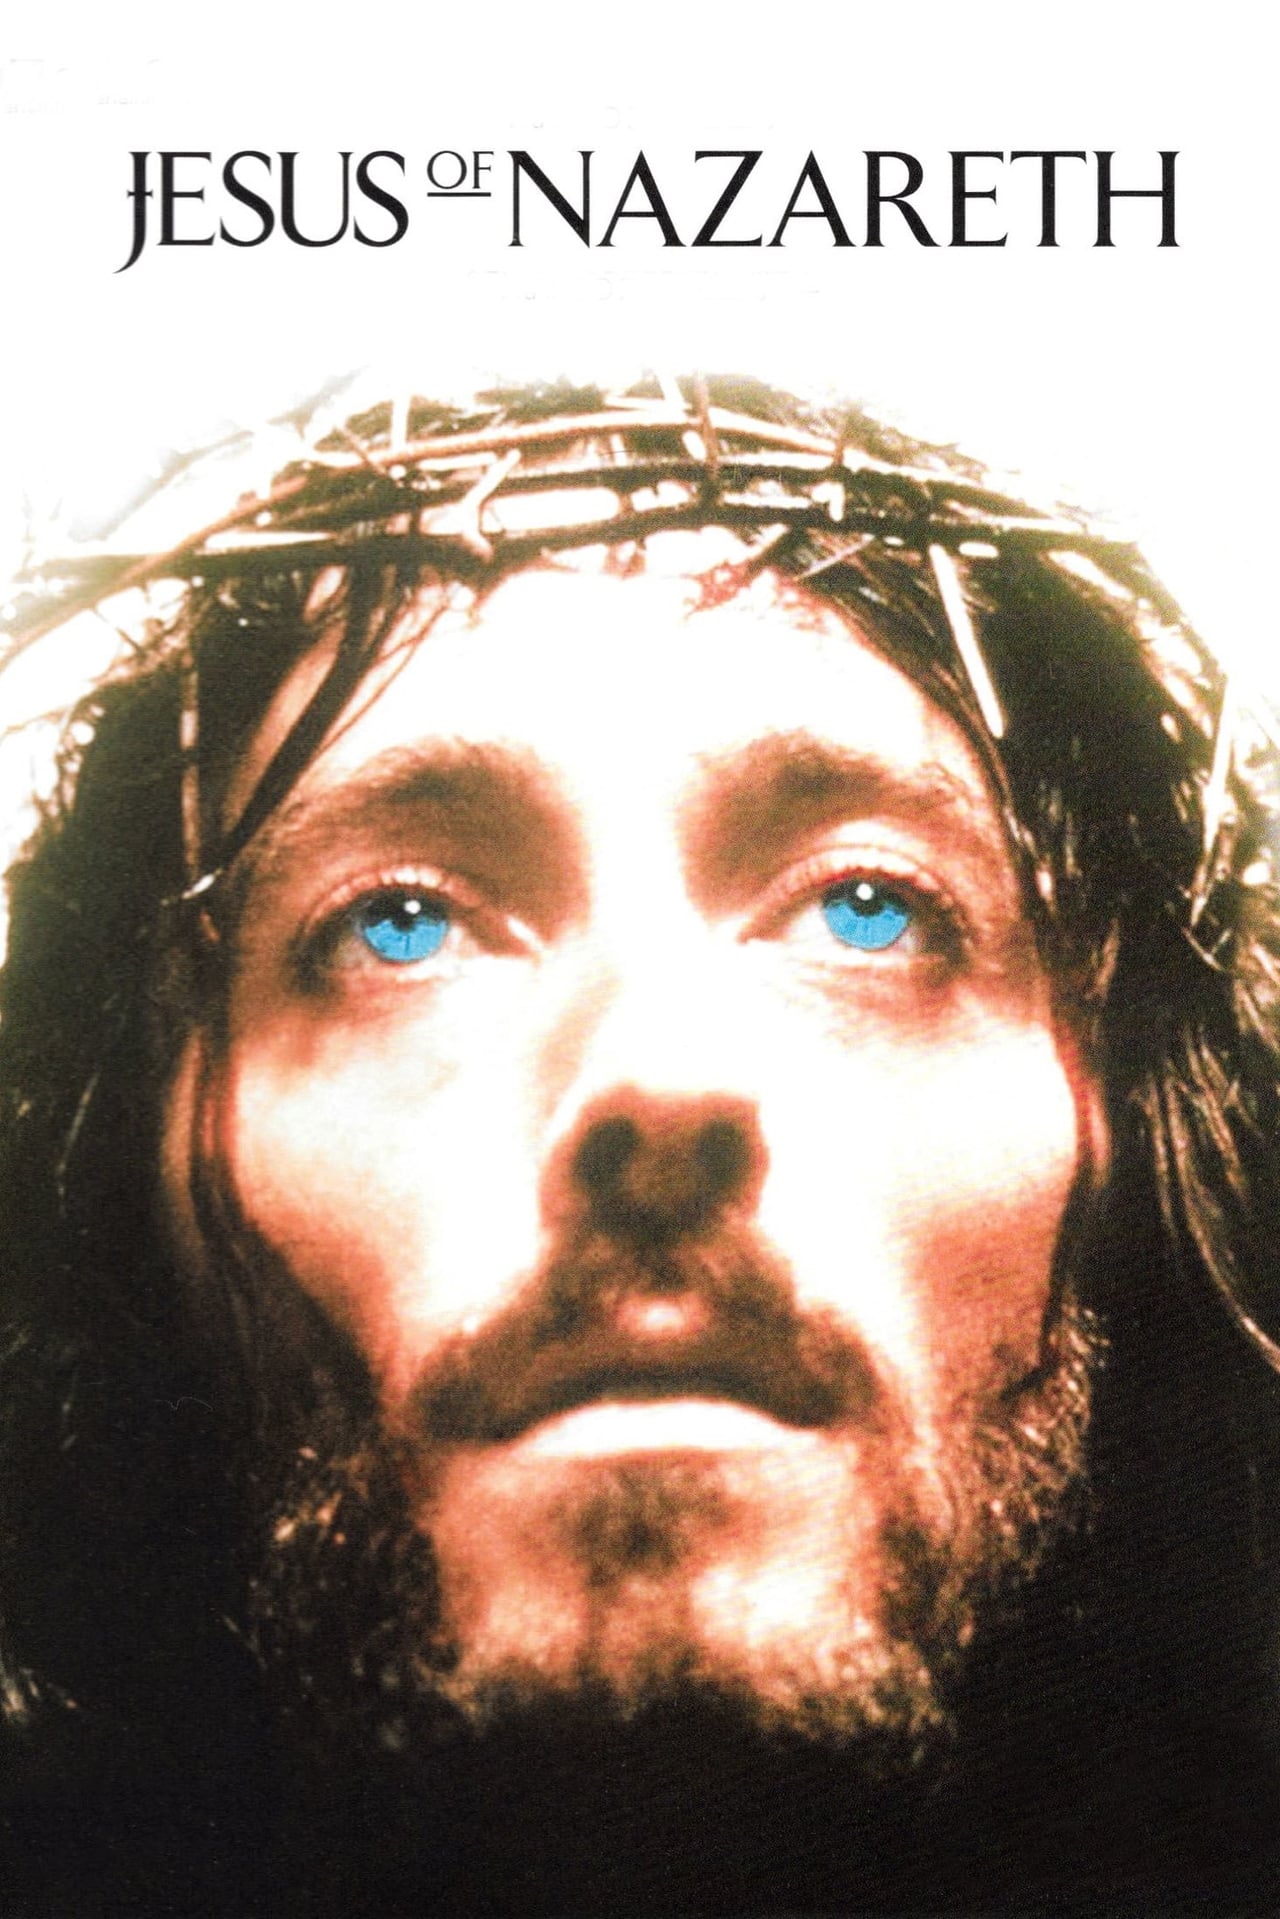 NF - Jesus of Nazareth Part 4